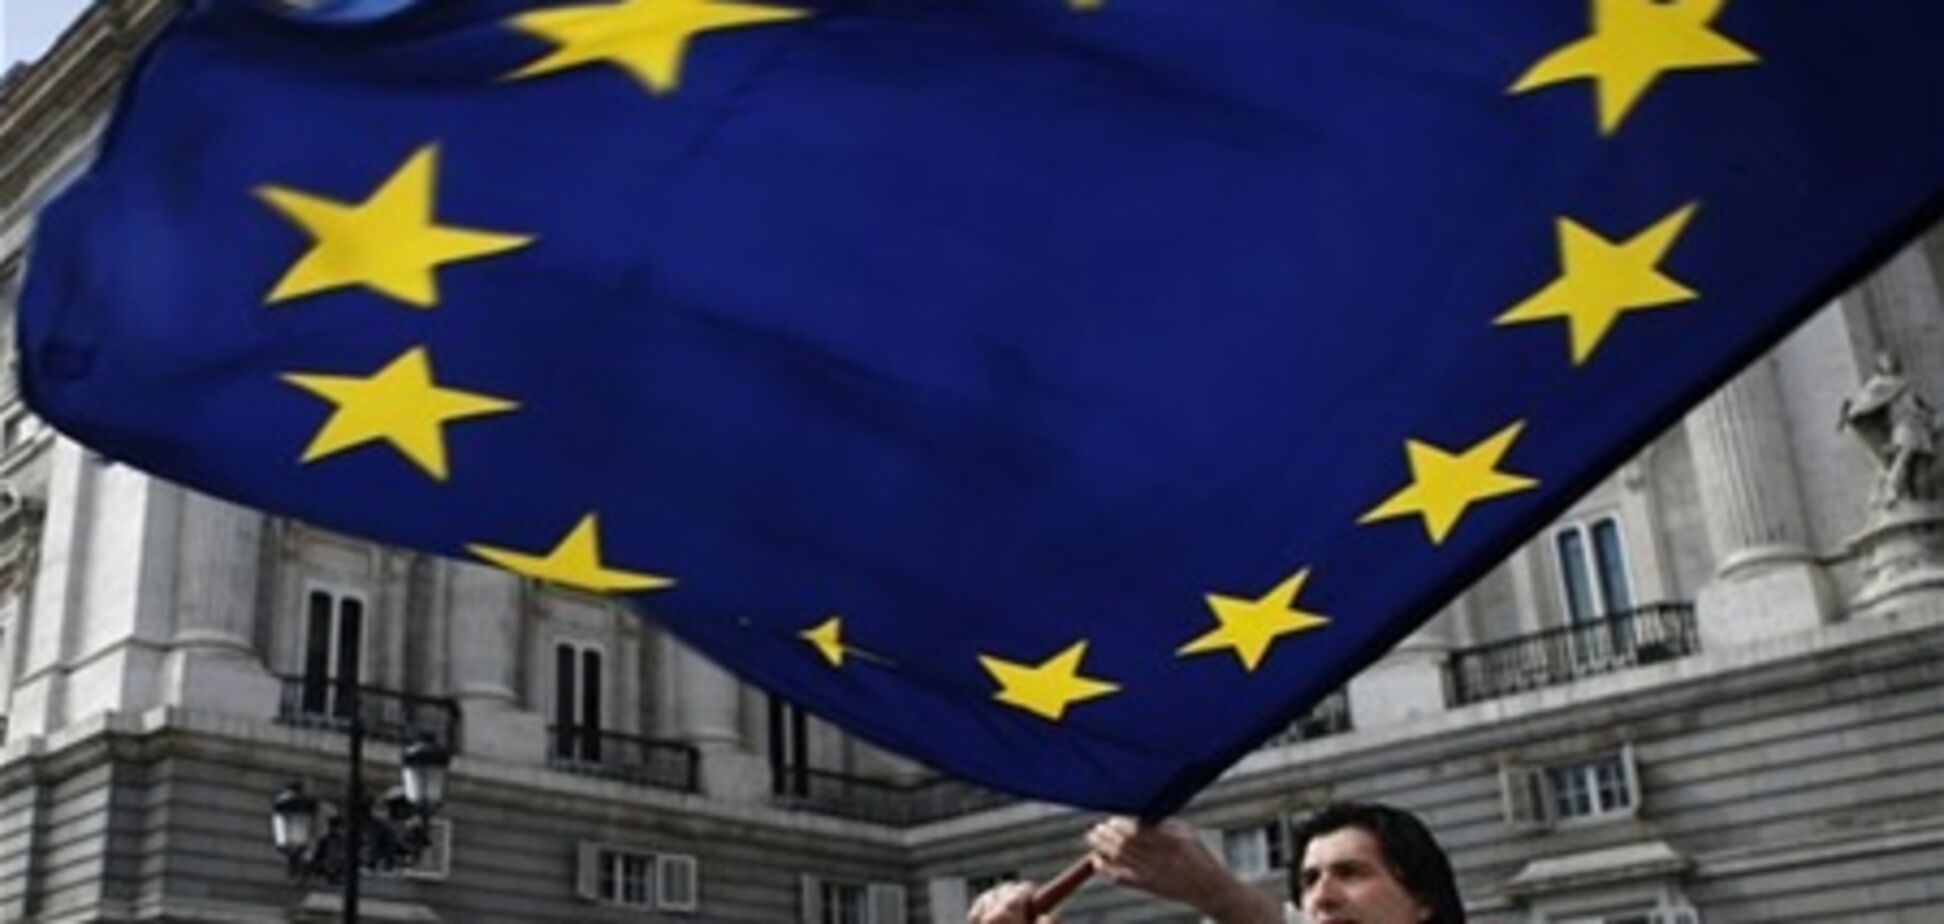 ЄС має намір позбавити Країни-боржники права управляти власним бюджетом